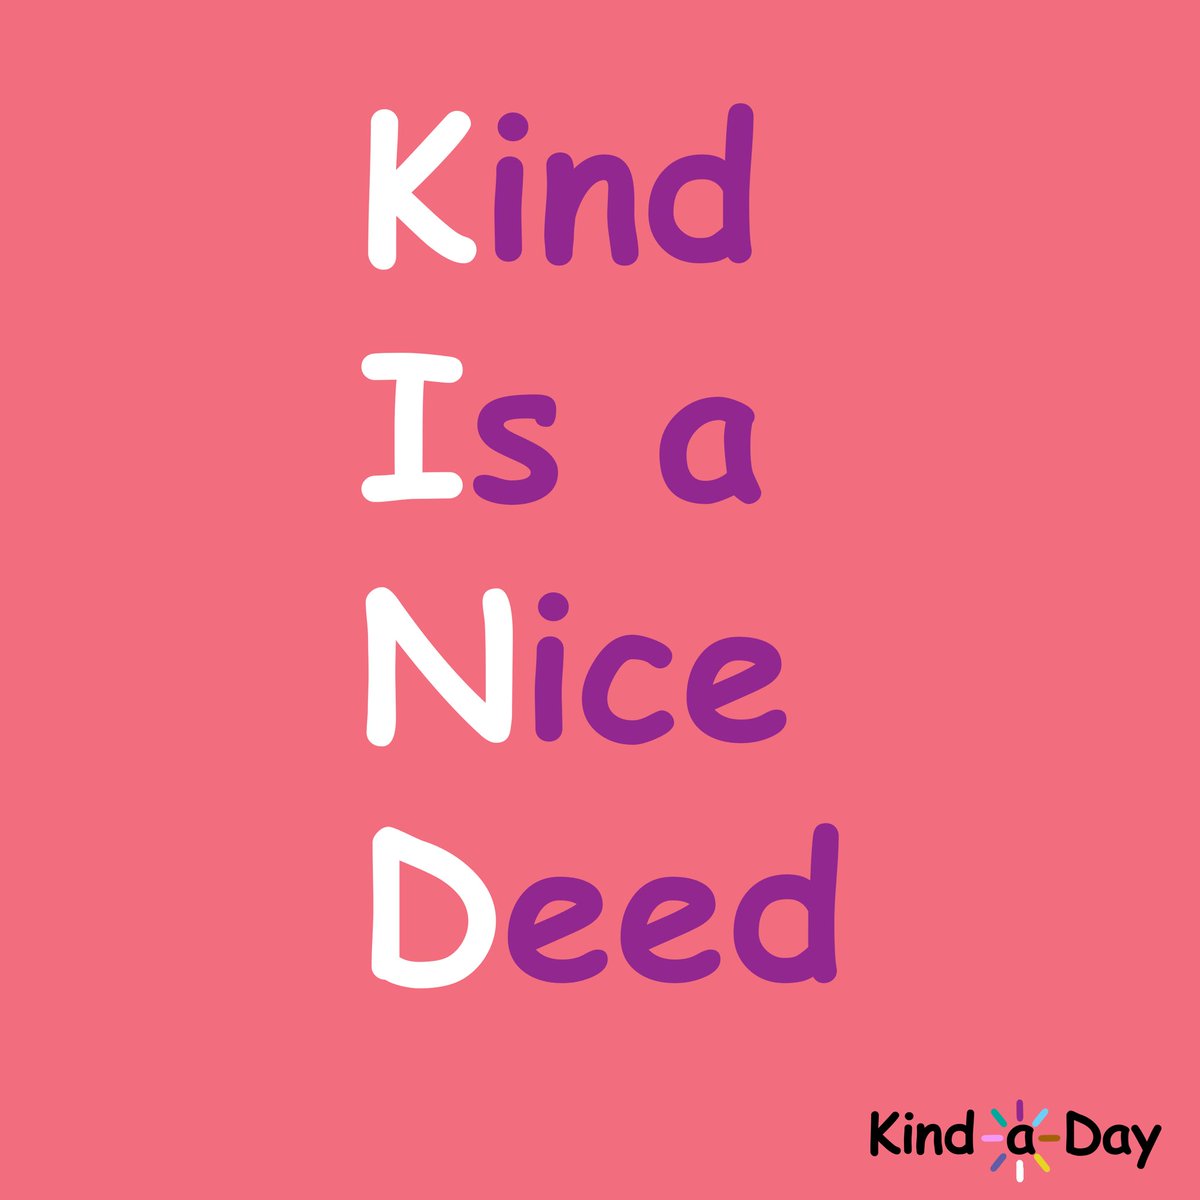 Kind Is a Nice Deed 💕
 
#kind #BeKind #kindness #Nice #BeNice #KindLife #ActsOfKindness #SpreadKindness #KindnessMatters #ChooseKindness #KindnessWins #KindaDay #KindnessAlways #KindnessEveryday #Kindness365 #KindnessChallenge #RandomActsOfKindness